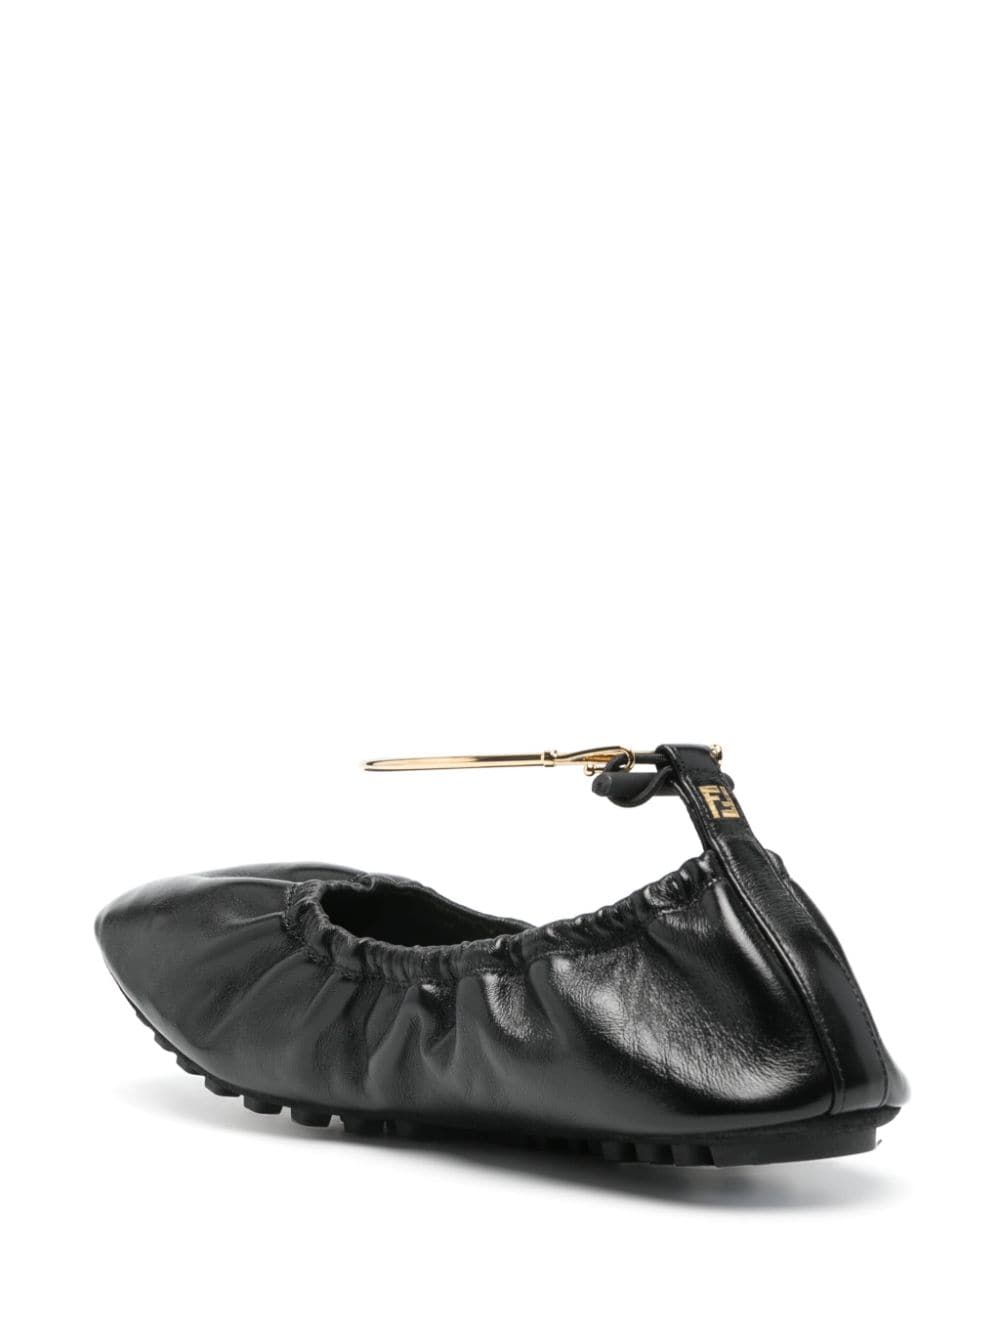 أحذية باليه جلد سوداء للنساء مزينة بتفاصيل مجعدة وسوار الكاحل بنقشة FF